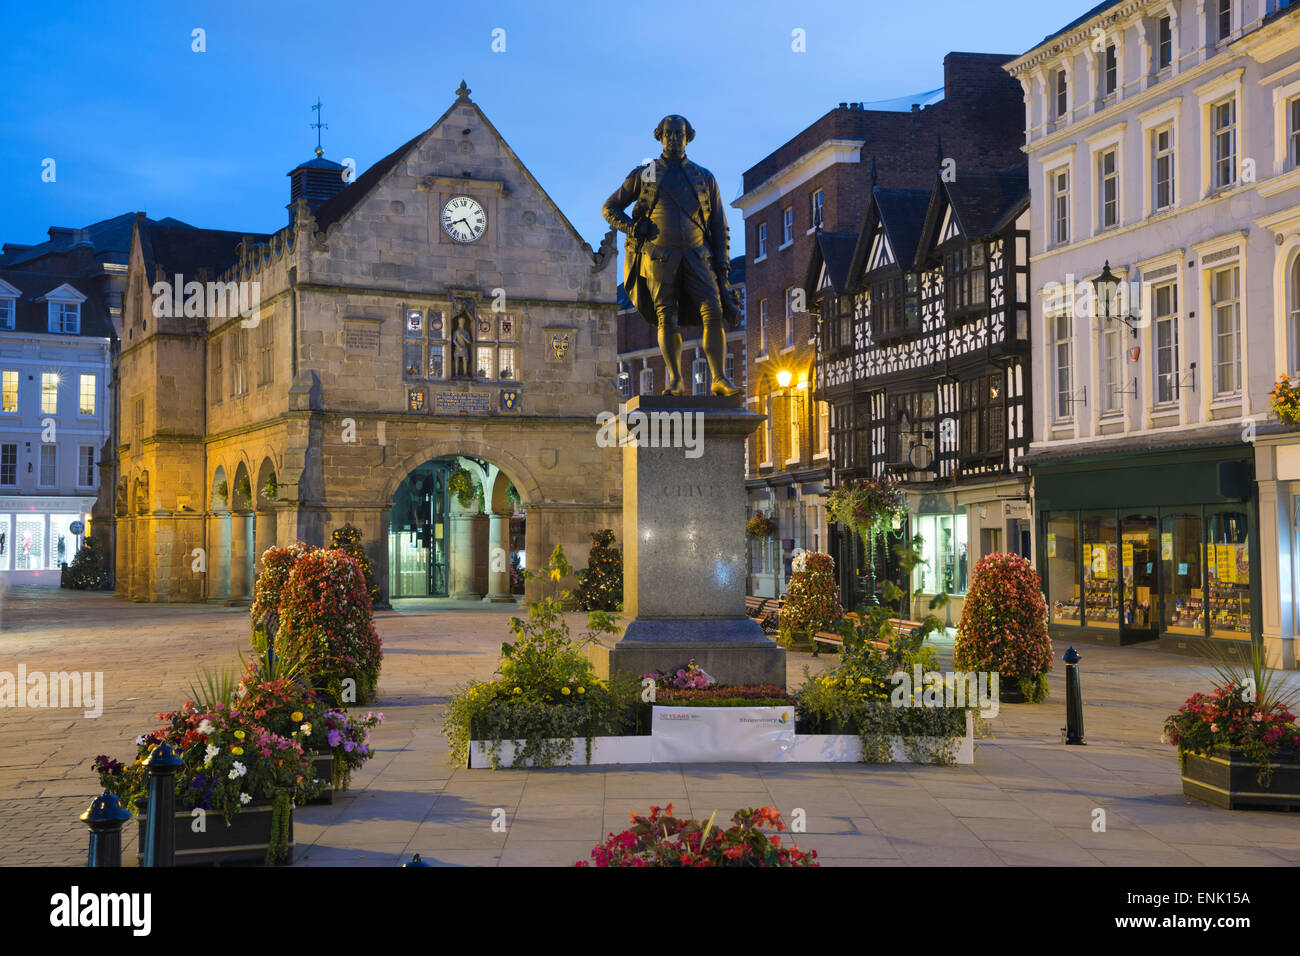 La Vieille Halle et Robert Clive statue, La Place, Shrewsbury, Shropshire, Angleterre, Royaume-Uni, Europe Banque D'Images